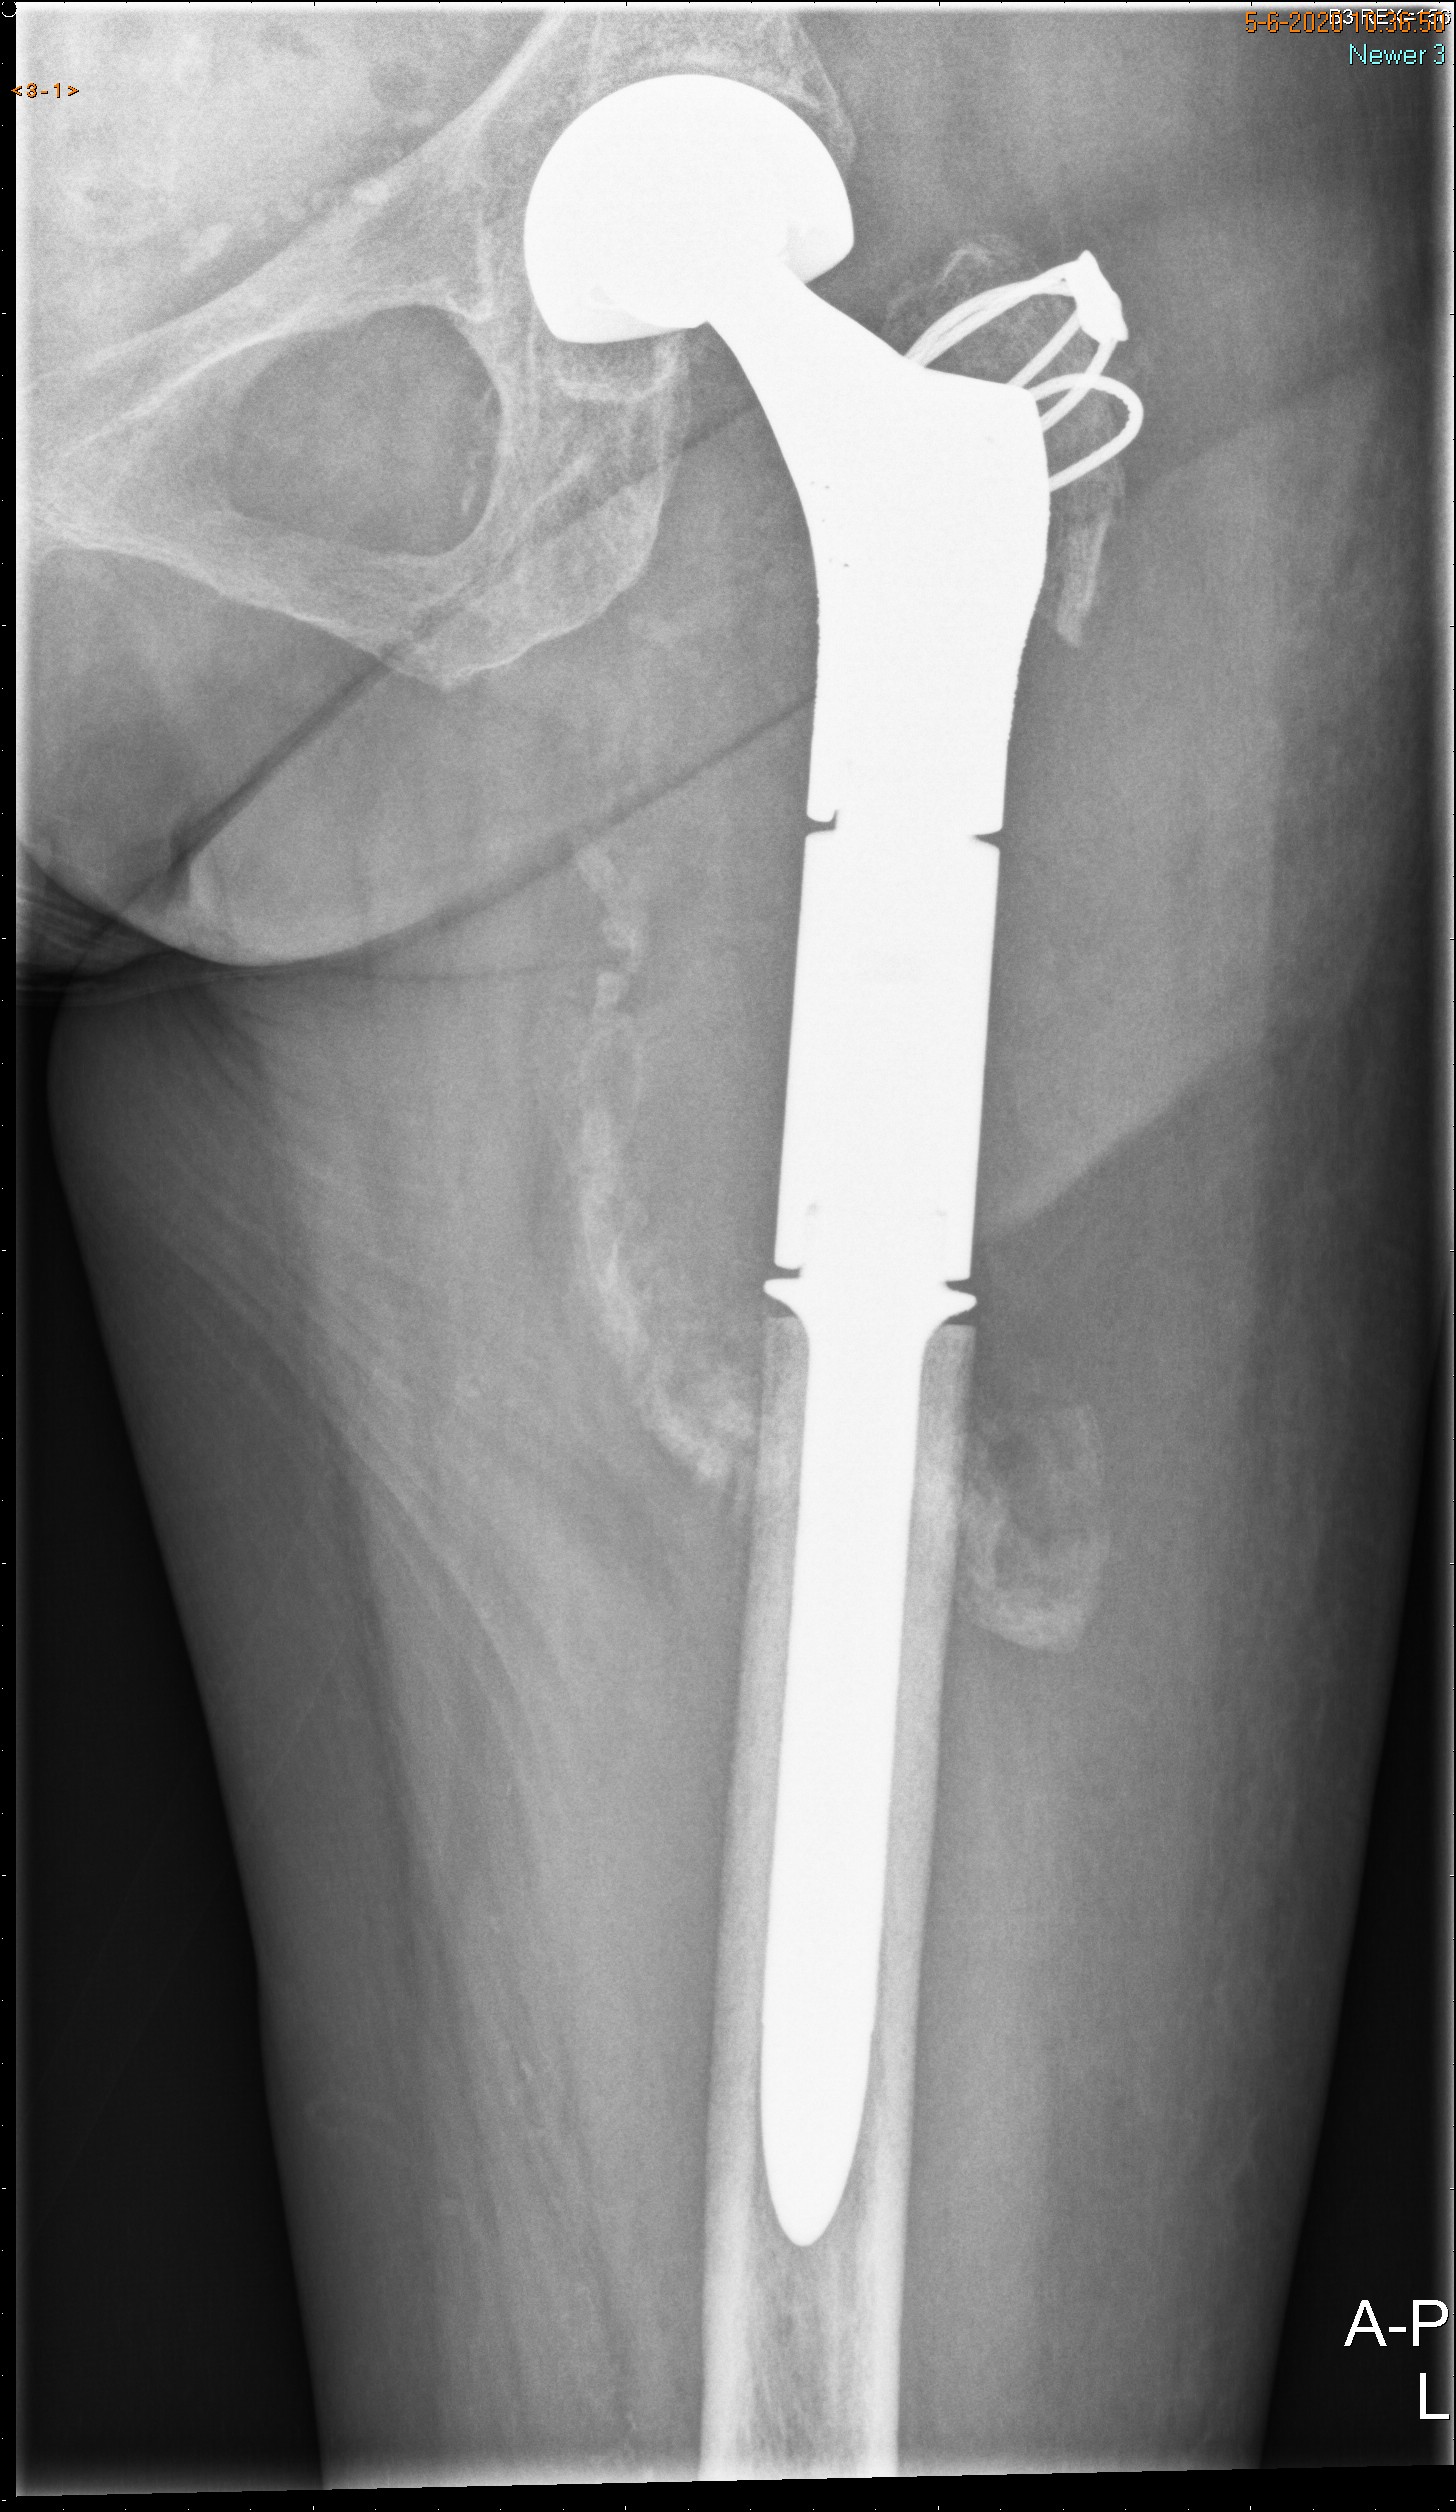 Röntgenfoto met prothese, van na de operatie